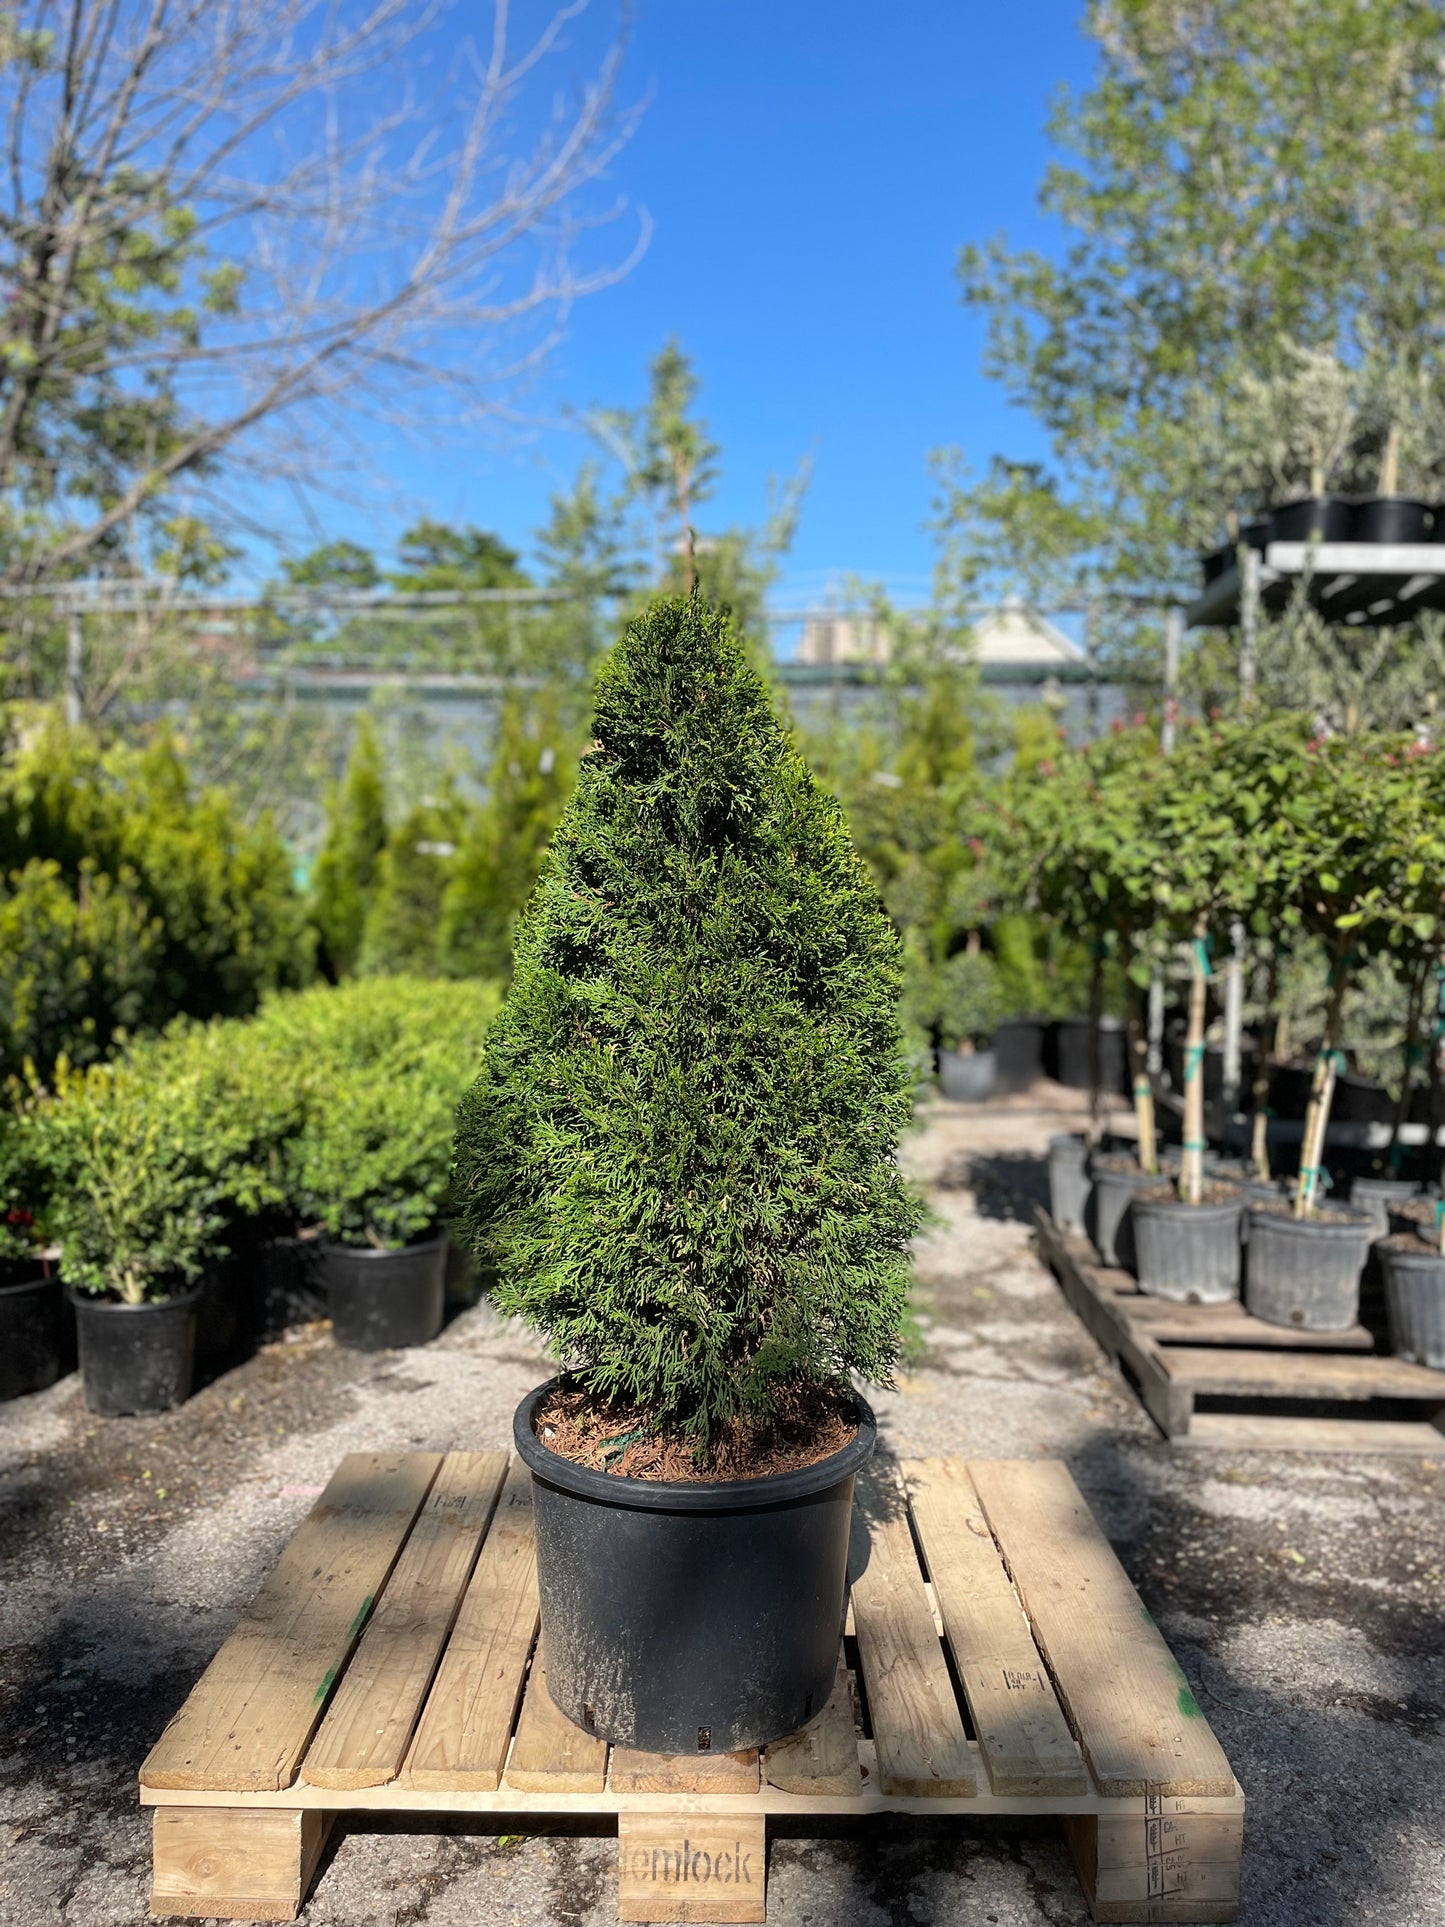 Emerald Cedar: Thuja occidentalis - 16 Inch Pot - 4 Foot Tall